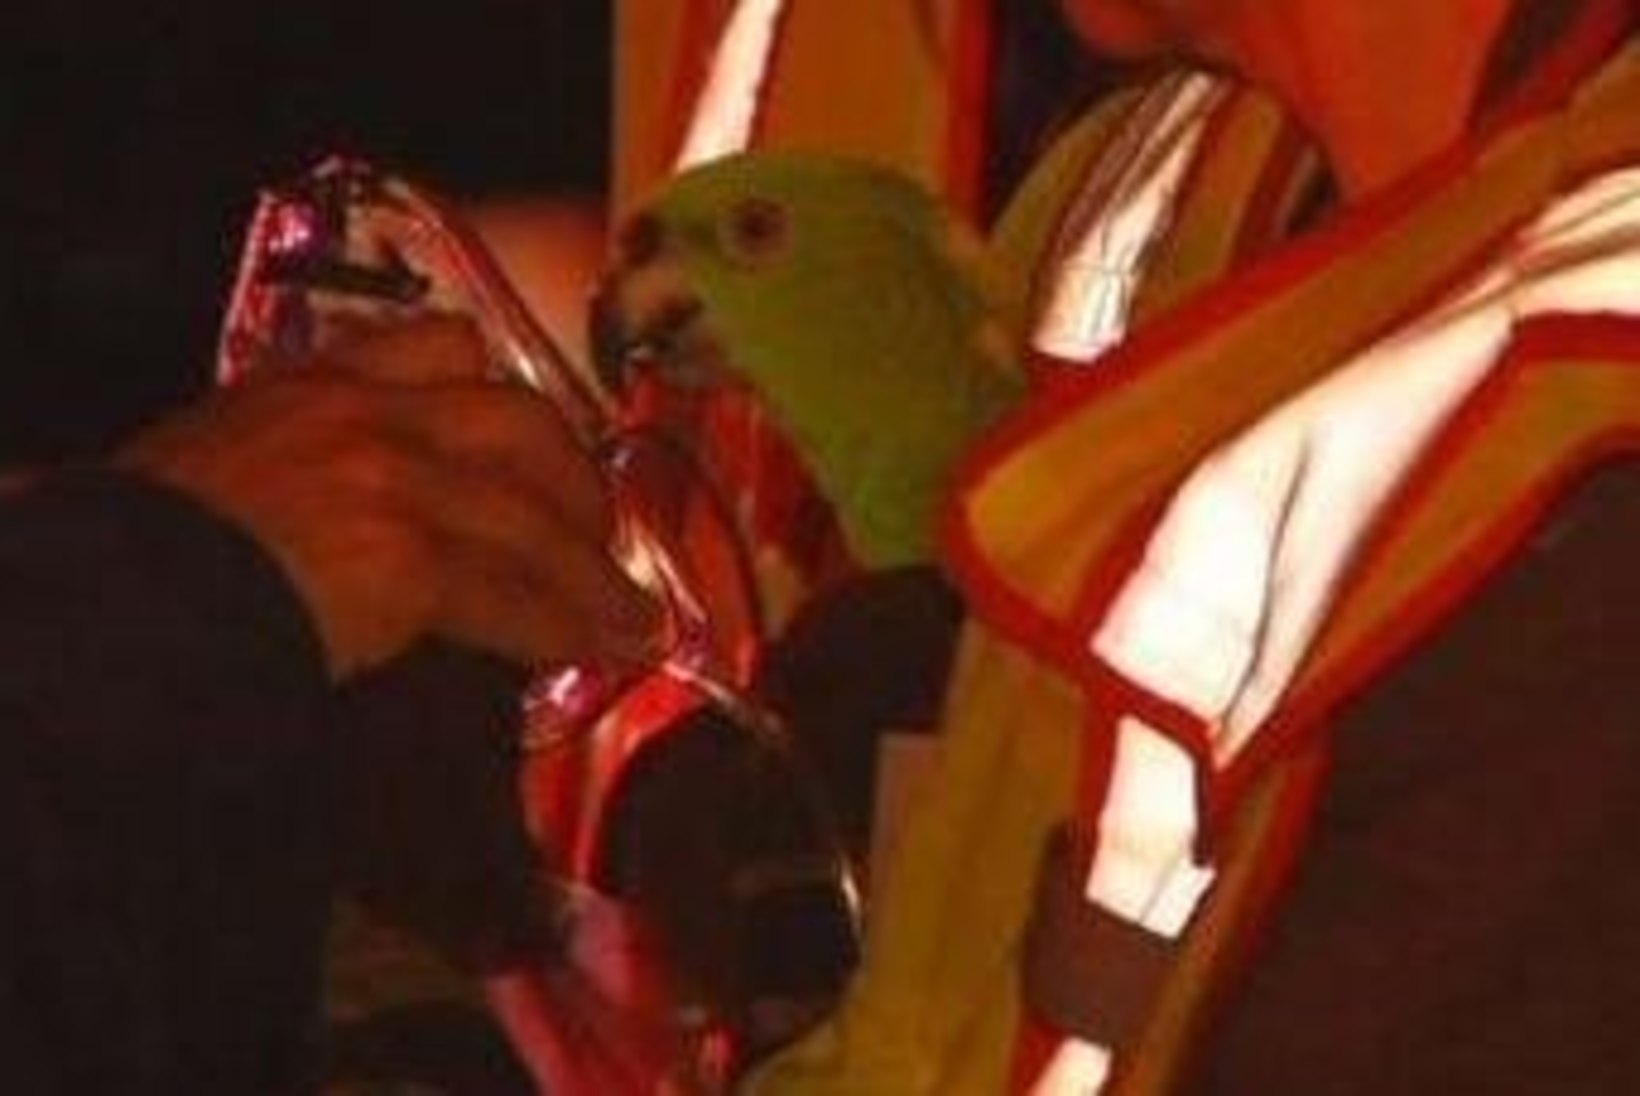 Rääkivad papagoid kutsusid abi ja pääsesid tulekahjust